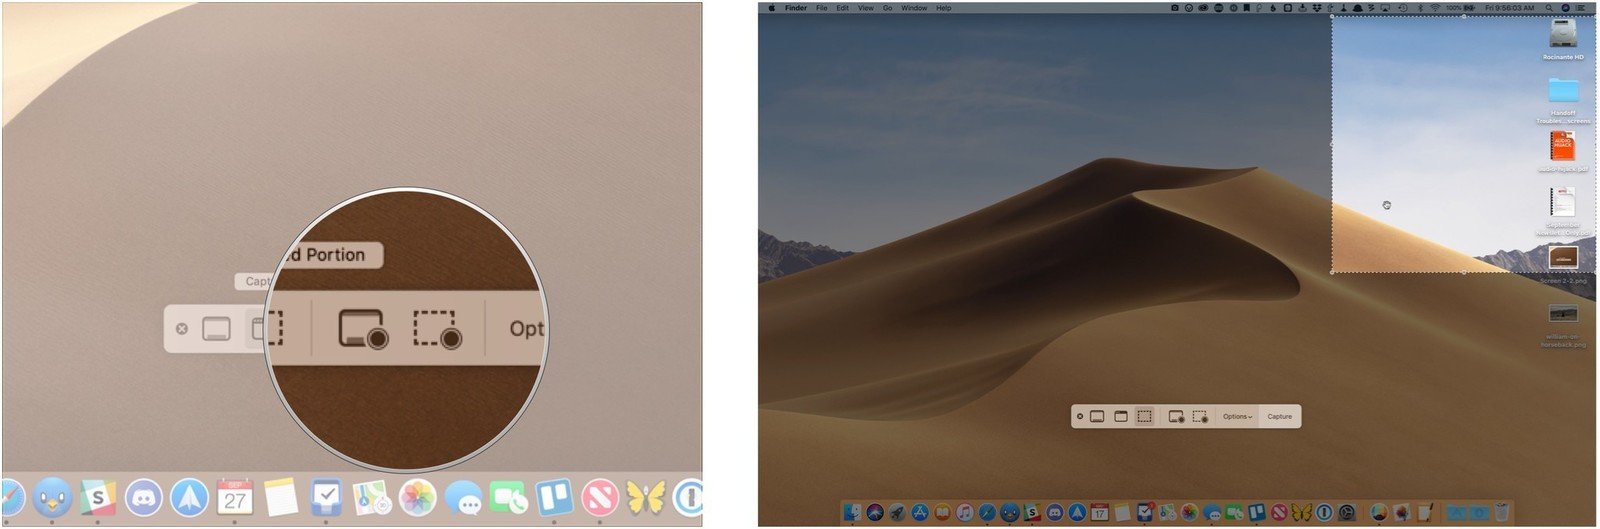 screenshot button for mac